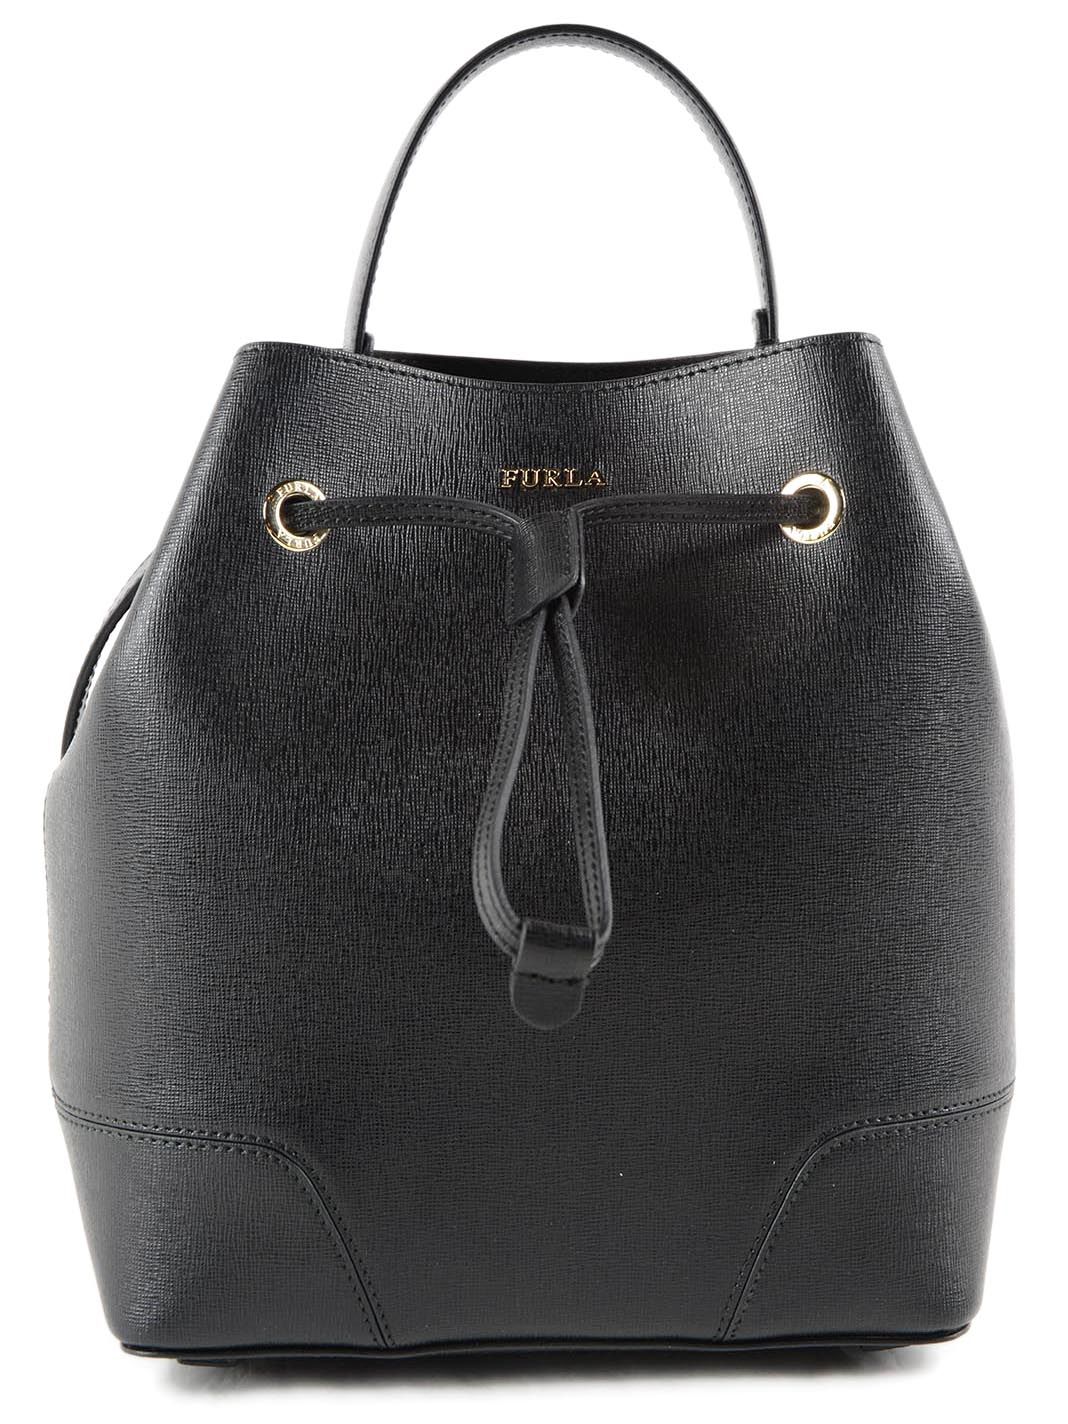 Furla - Furla Stacy Bucket Bag - Black, Women's Shoulder Bags | Italist